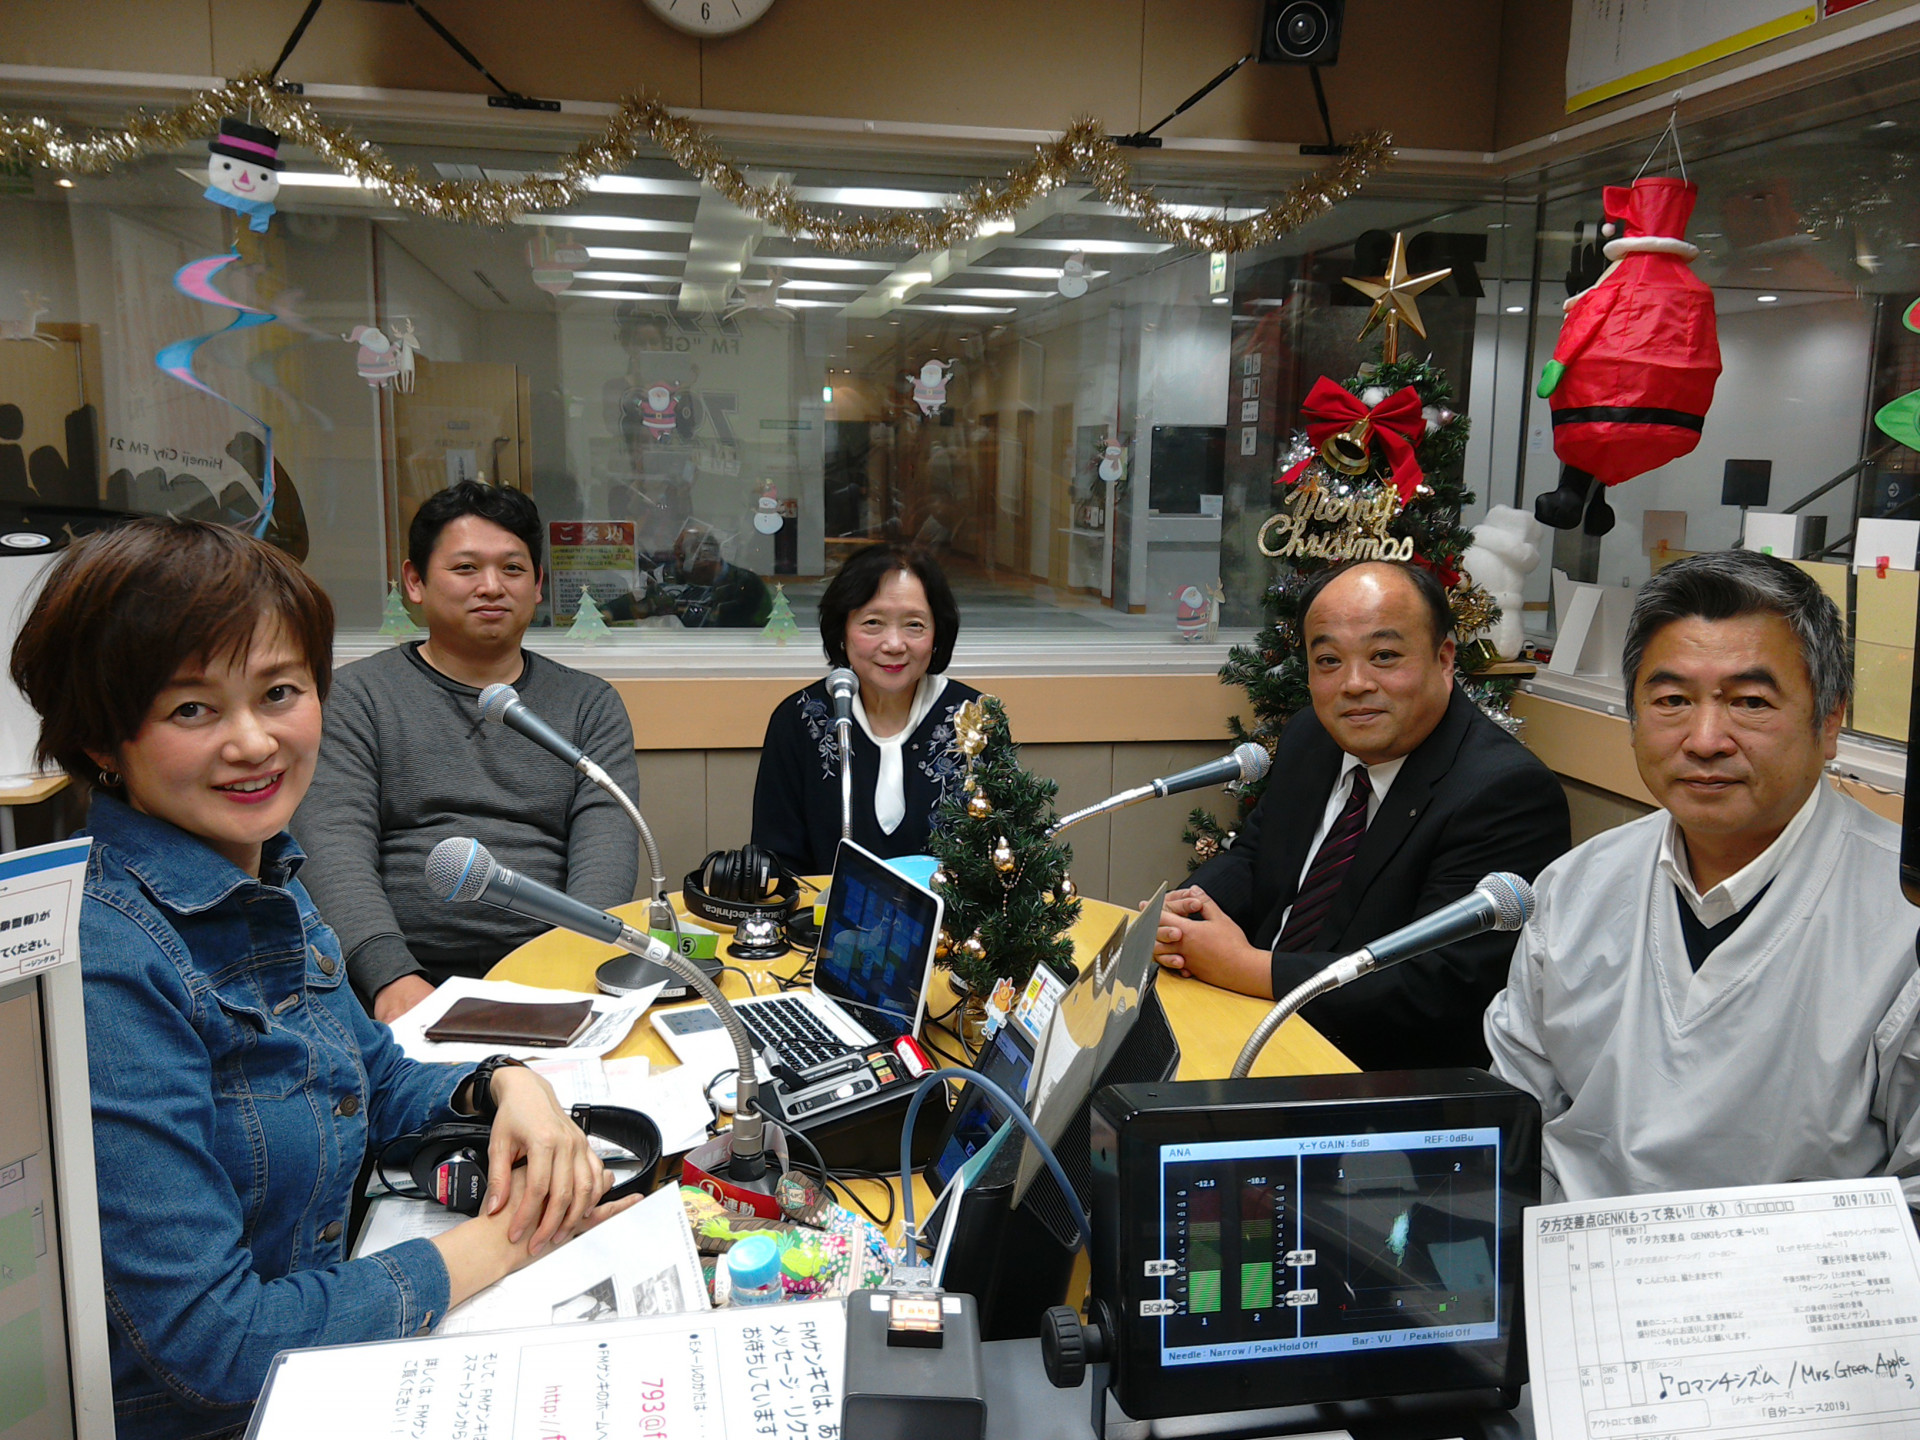 姫路のラジオ局FMゲンキで放送中の「調査士のモノサシ」令和元年12月放送分